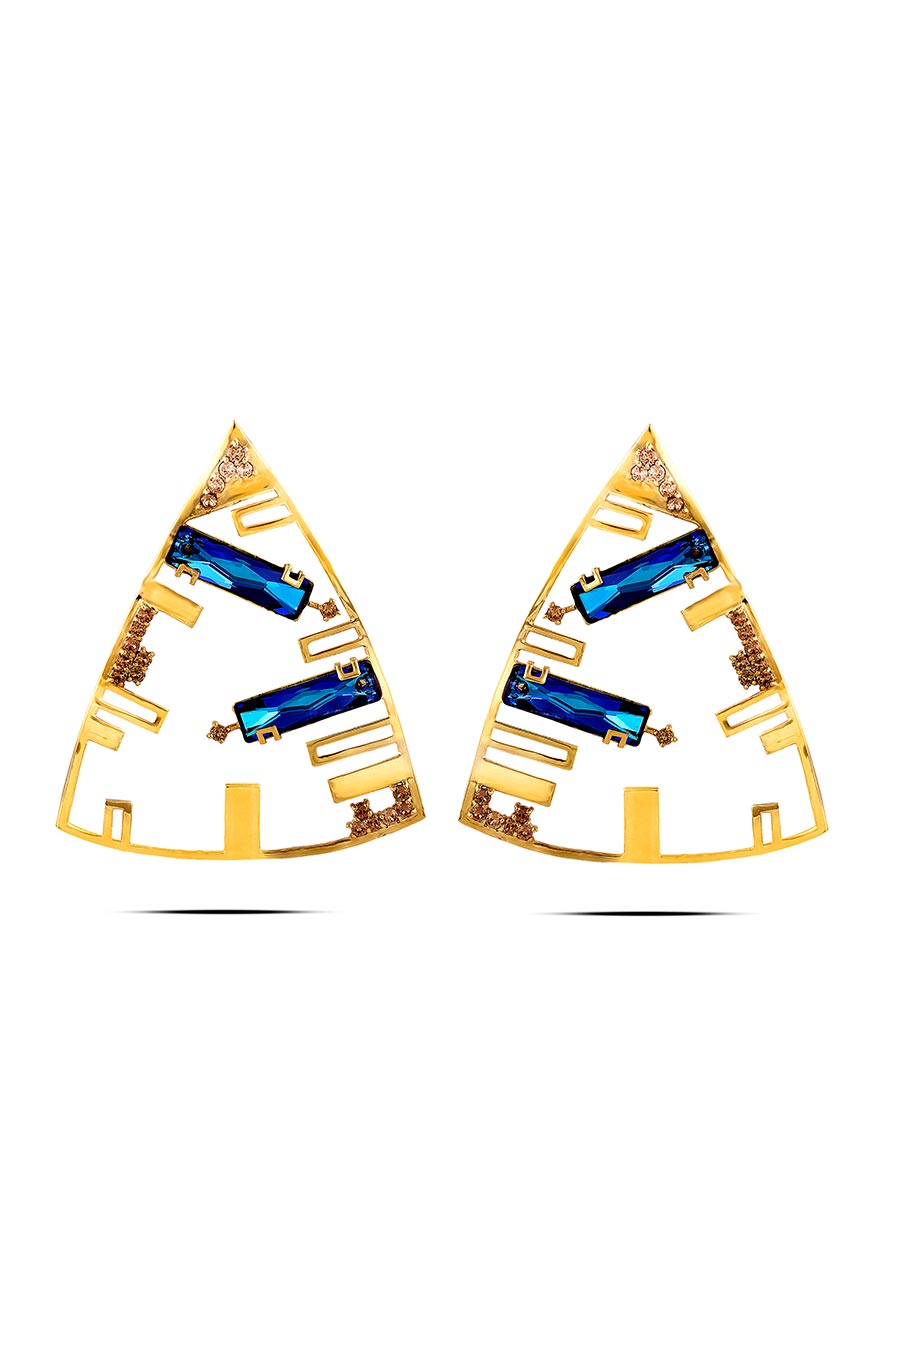 Bermuda Blue Swarovski Dangler Earrings